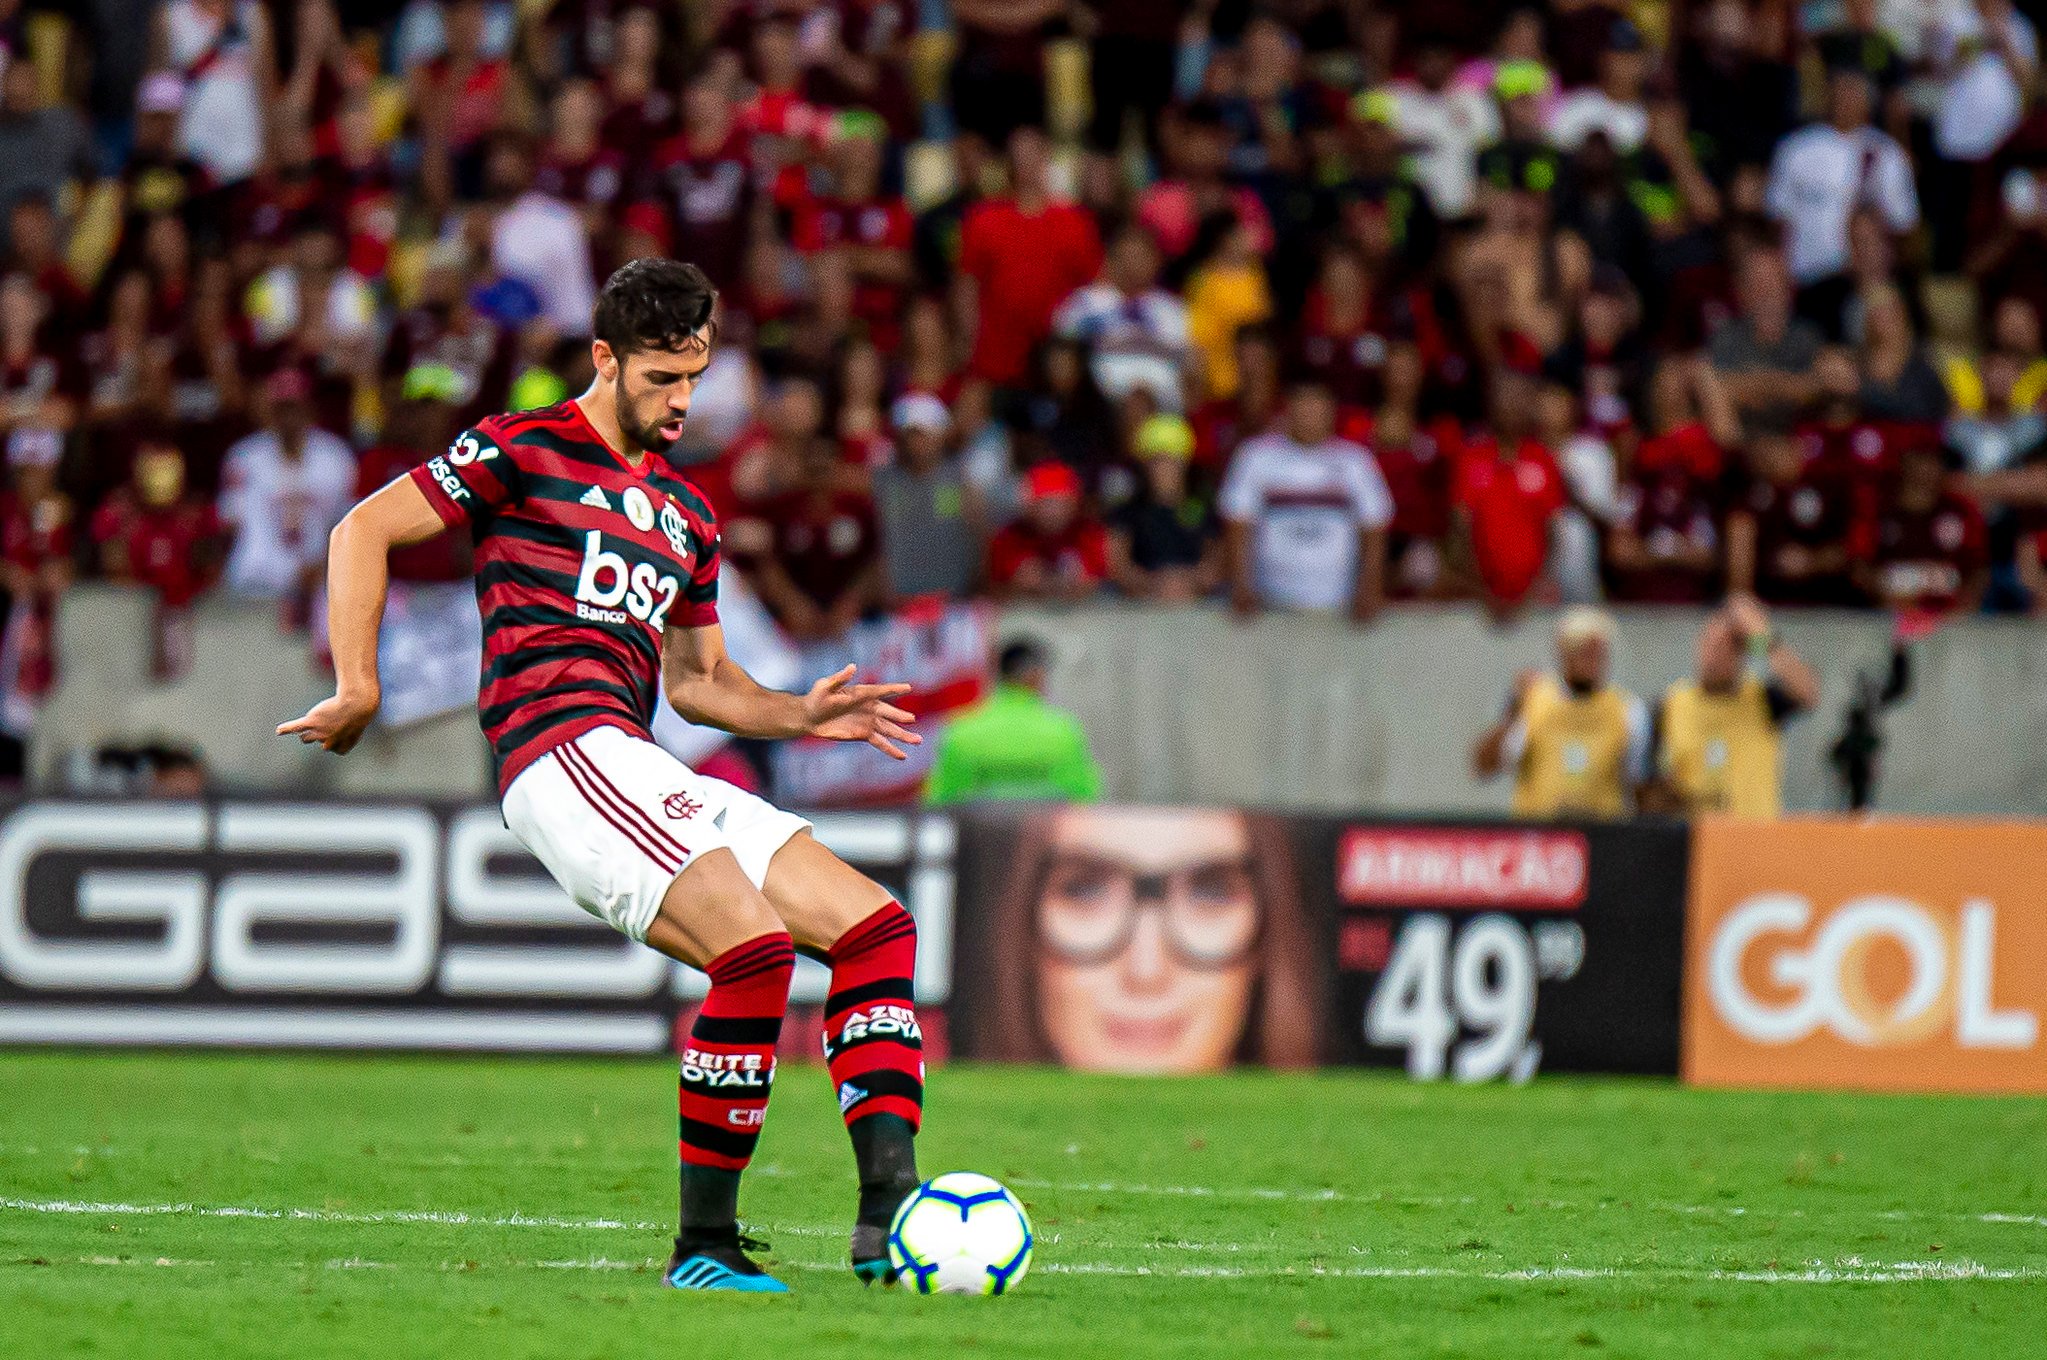 Em nono lugar está Pablo Marí, que chegou ao Flamengo na temporada passada, depois de passar pelo futebol espanhol. Rapidamente, o zagueiro espanhol conquistou a vaga de titular, sendo importante nas conquistas da Libertadores e Brasileiro. Está no Arsenal, da Inglaterra. 